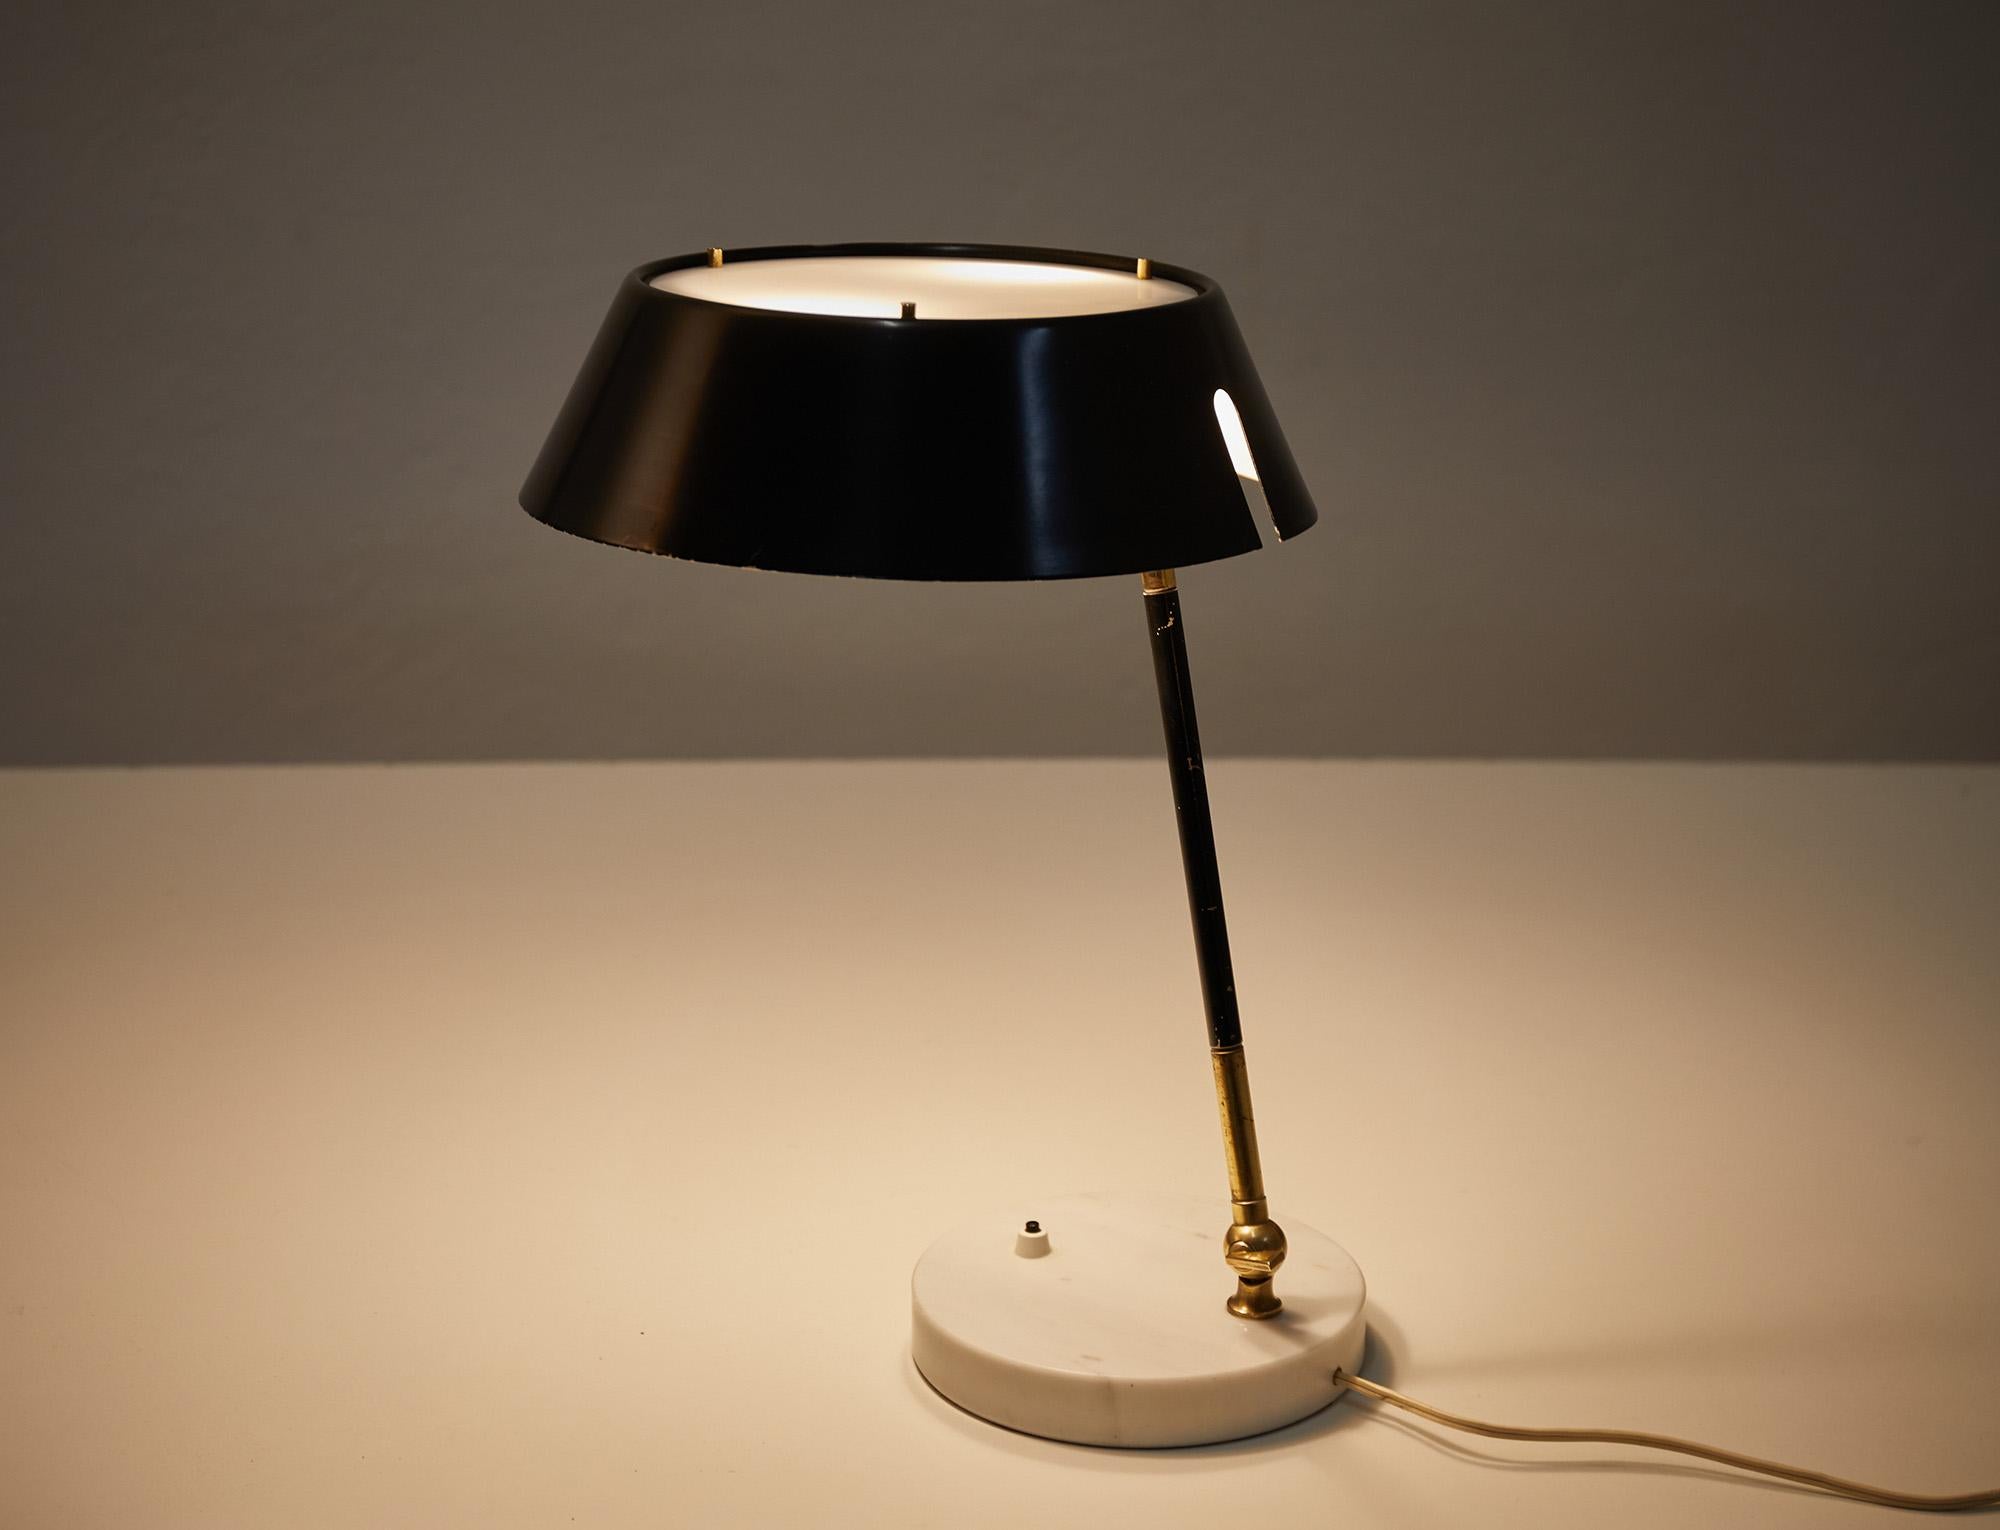 Elegante verstellbare Tisch- oder Schreibtischlampe, entworfen und hergestellt von Stilux, Italien um 1960. 

Die Leuchte hat einen runden, schwarzen Metallschirm mit einem Plexiglasdiffusor für einen weichen Lichteffekt auf der Oberseite. Der